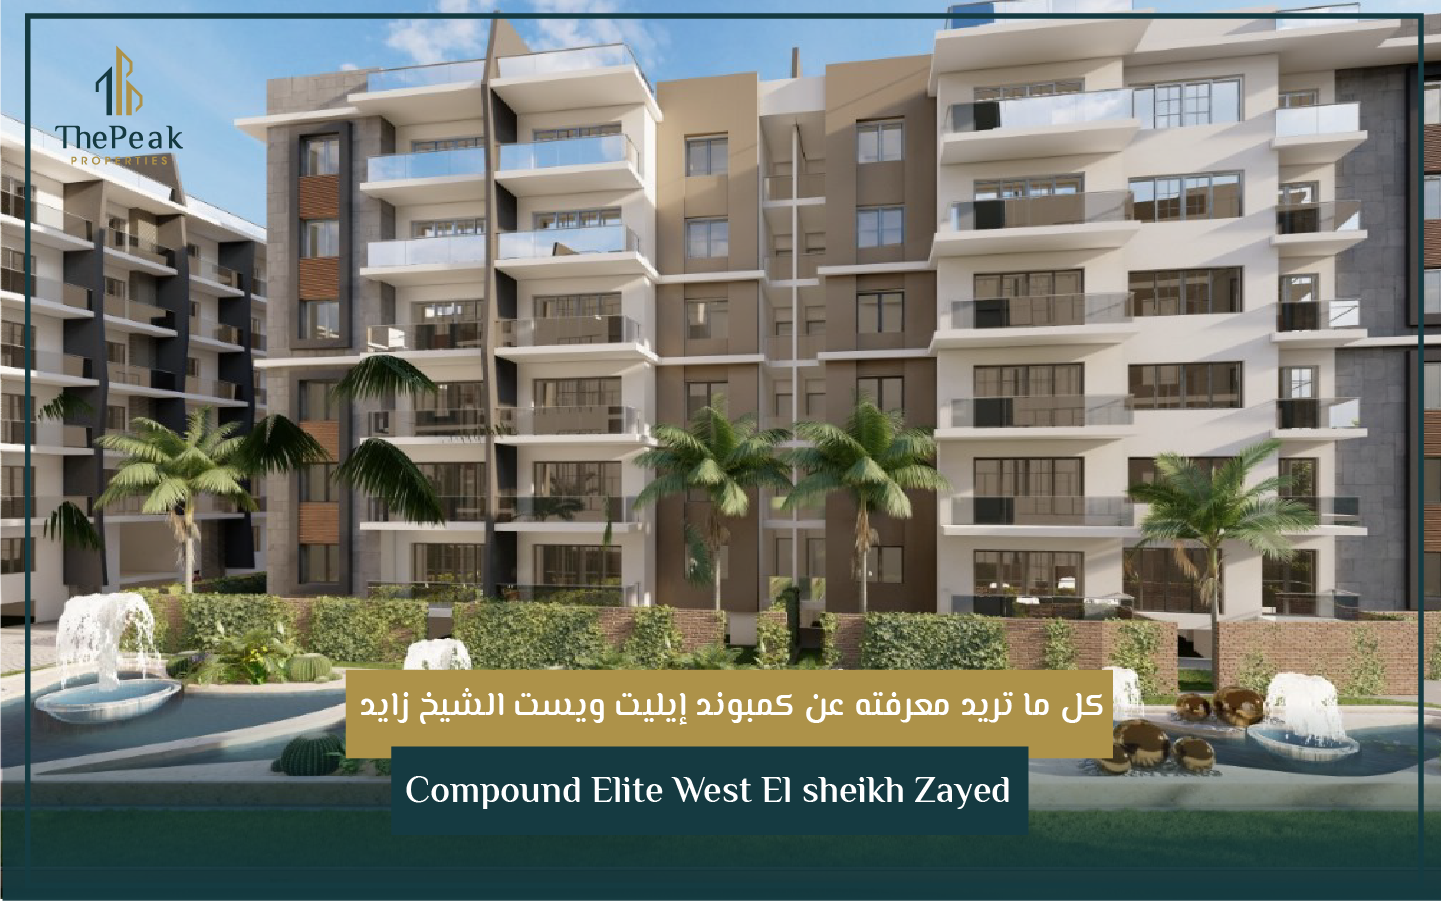 "شقة للبيع بالتقسيط في الشيخ زايد  مساحة 179 متر  مقدم 15 % و تقسيط يصل إلي 8 سنوات  في مشروع Compound Elite West El sheikh Zayed" | THE PEAK PROPERTIES